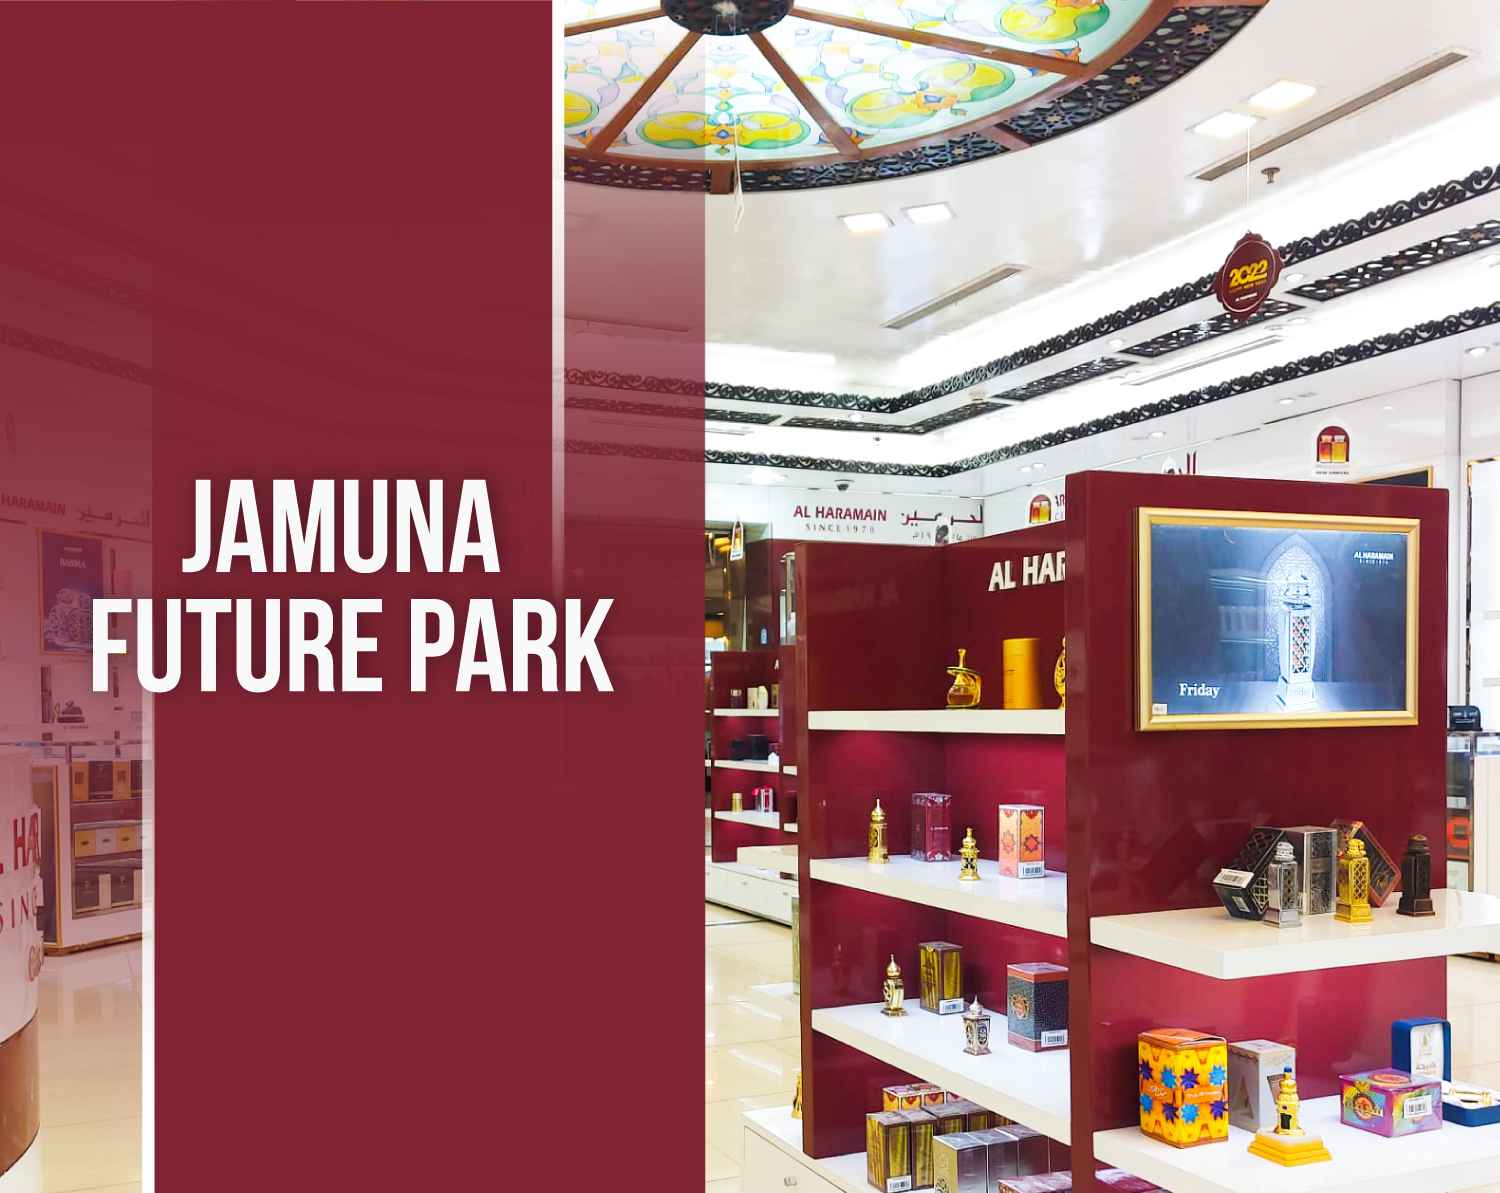 JAMUNA FUTURE PARK